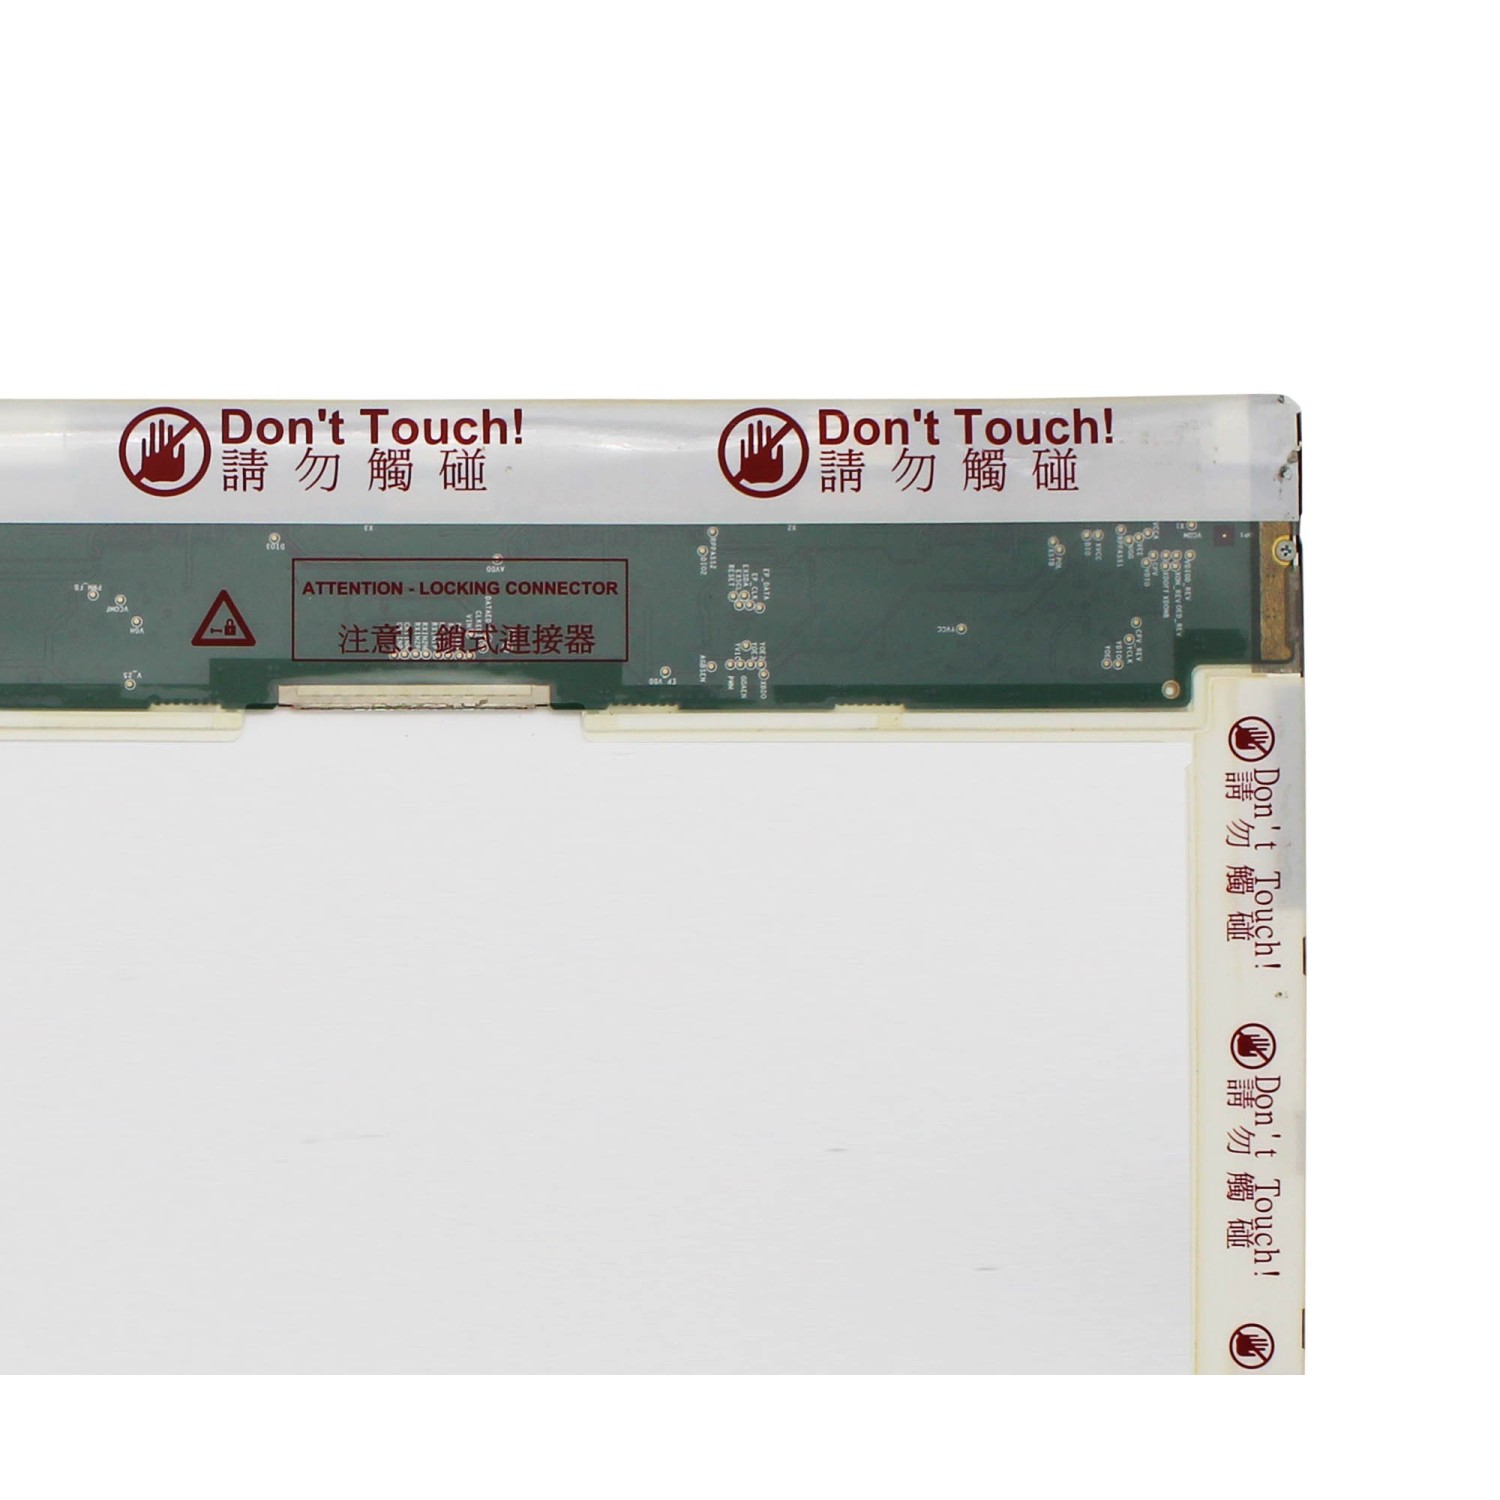 PANTALLA LCD DE 15.6" PARA PORTÁTIL HP COMPAQ PRESARIO CQ61-330SS